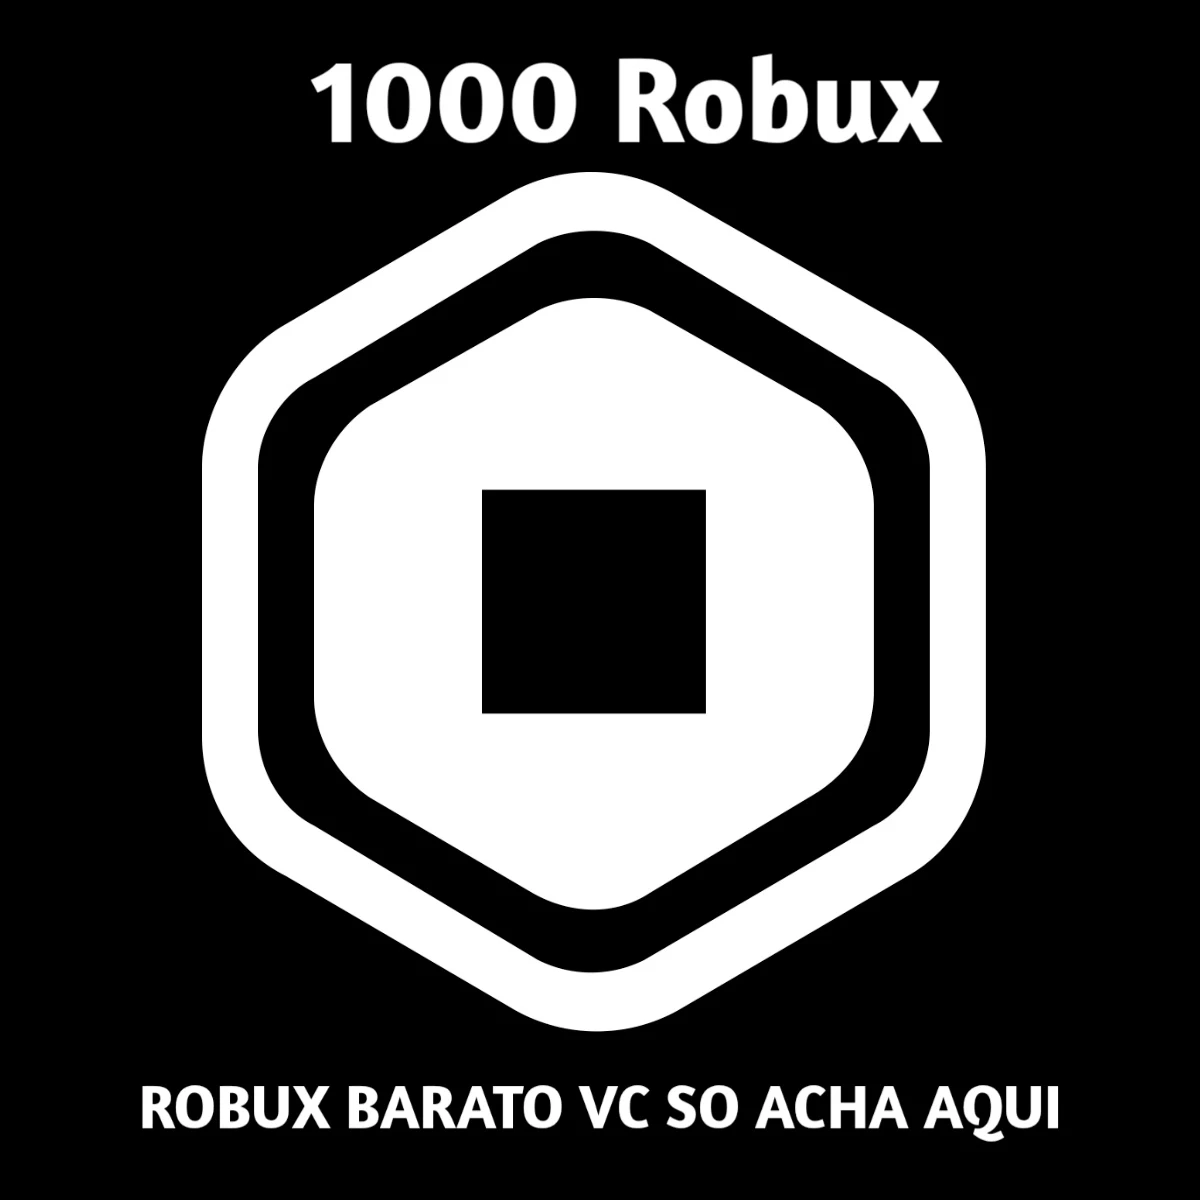 DE 1000 CONTAS PREMIUM ROBLOX COM ROBUX - 17/07/2019